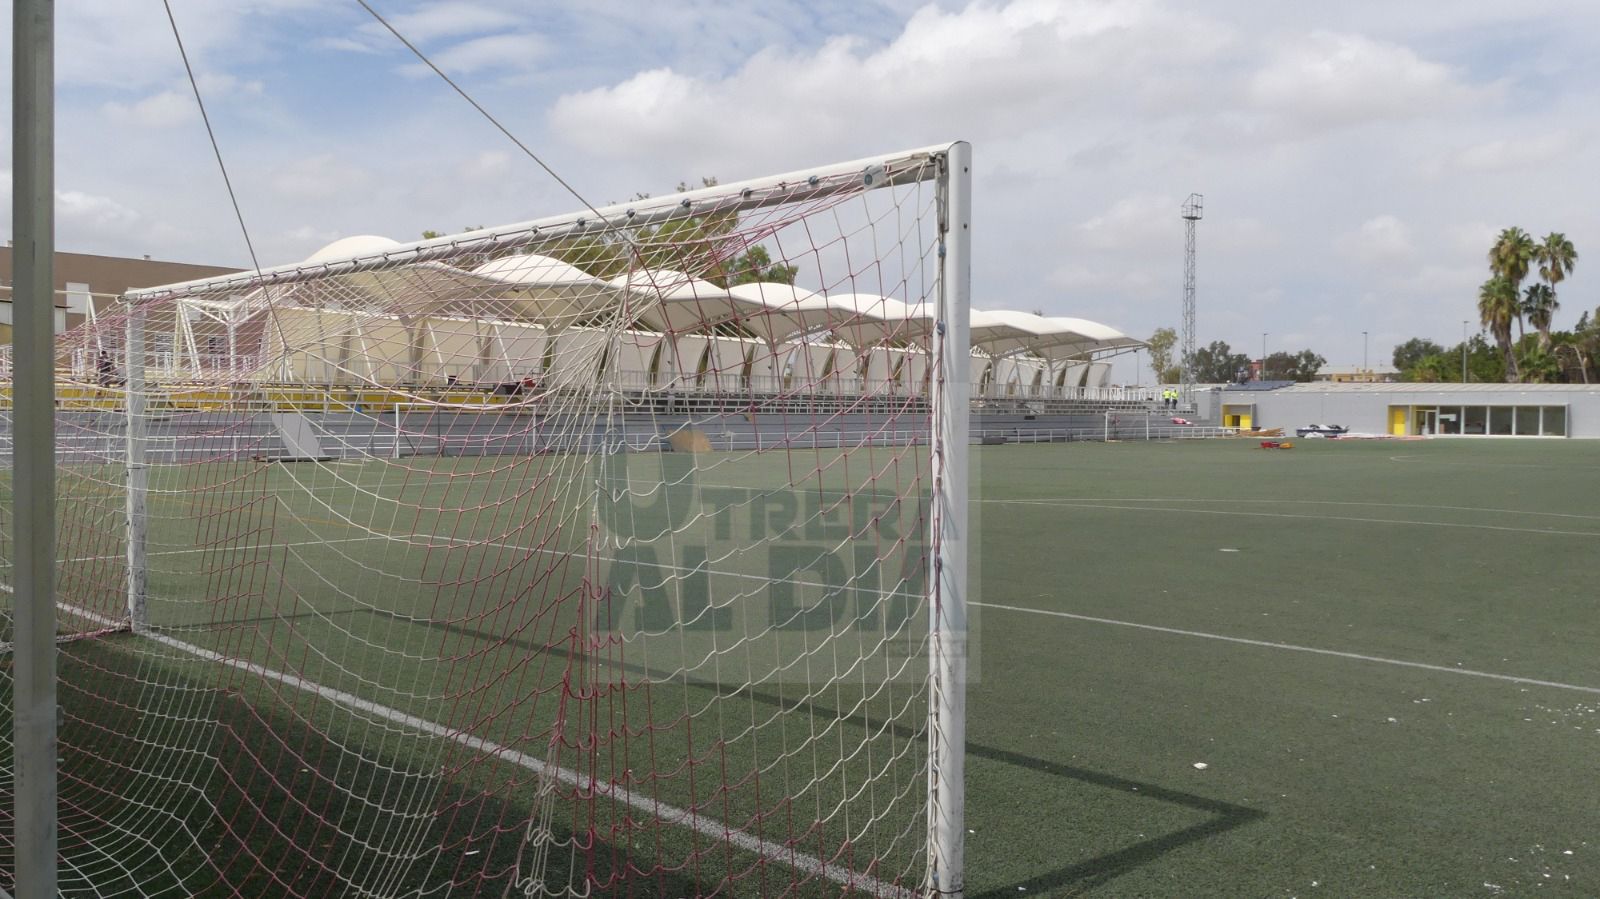 Dos empresas nacionales optan a la licitación de las obras de cambio de césped del Estadio San Juan Bosco